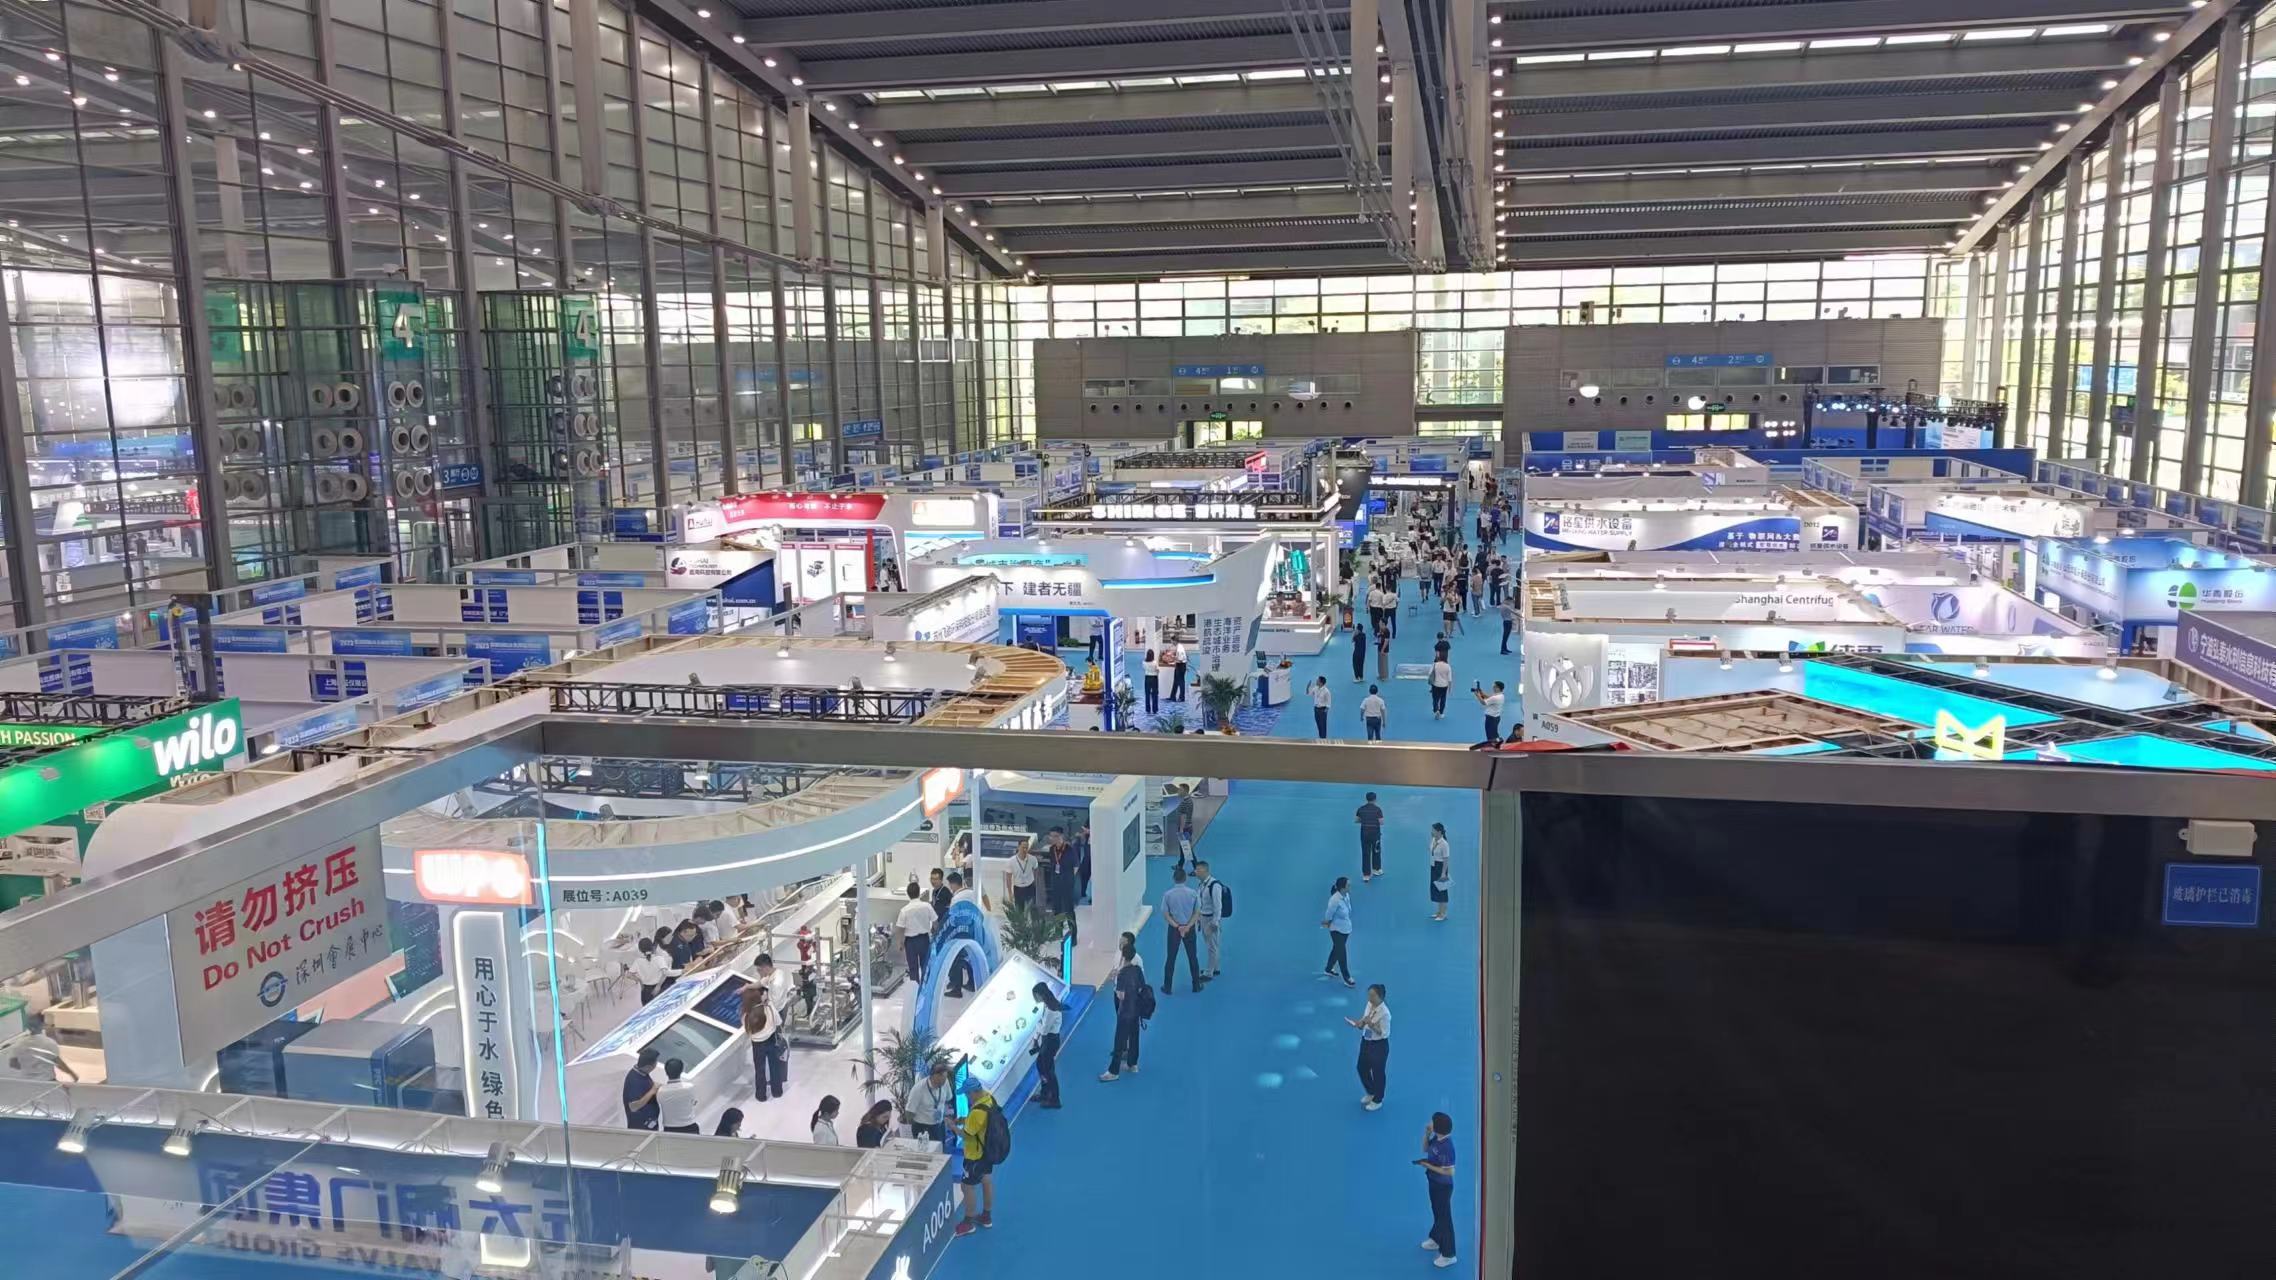 CDSR |Medzinárodná výstava bagrovacích technológií a zariadení v Shenzhene